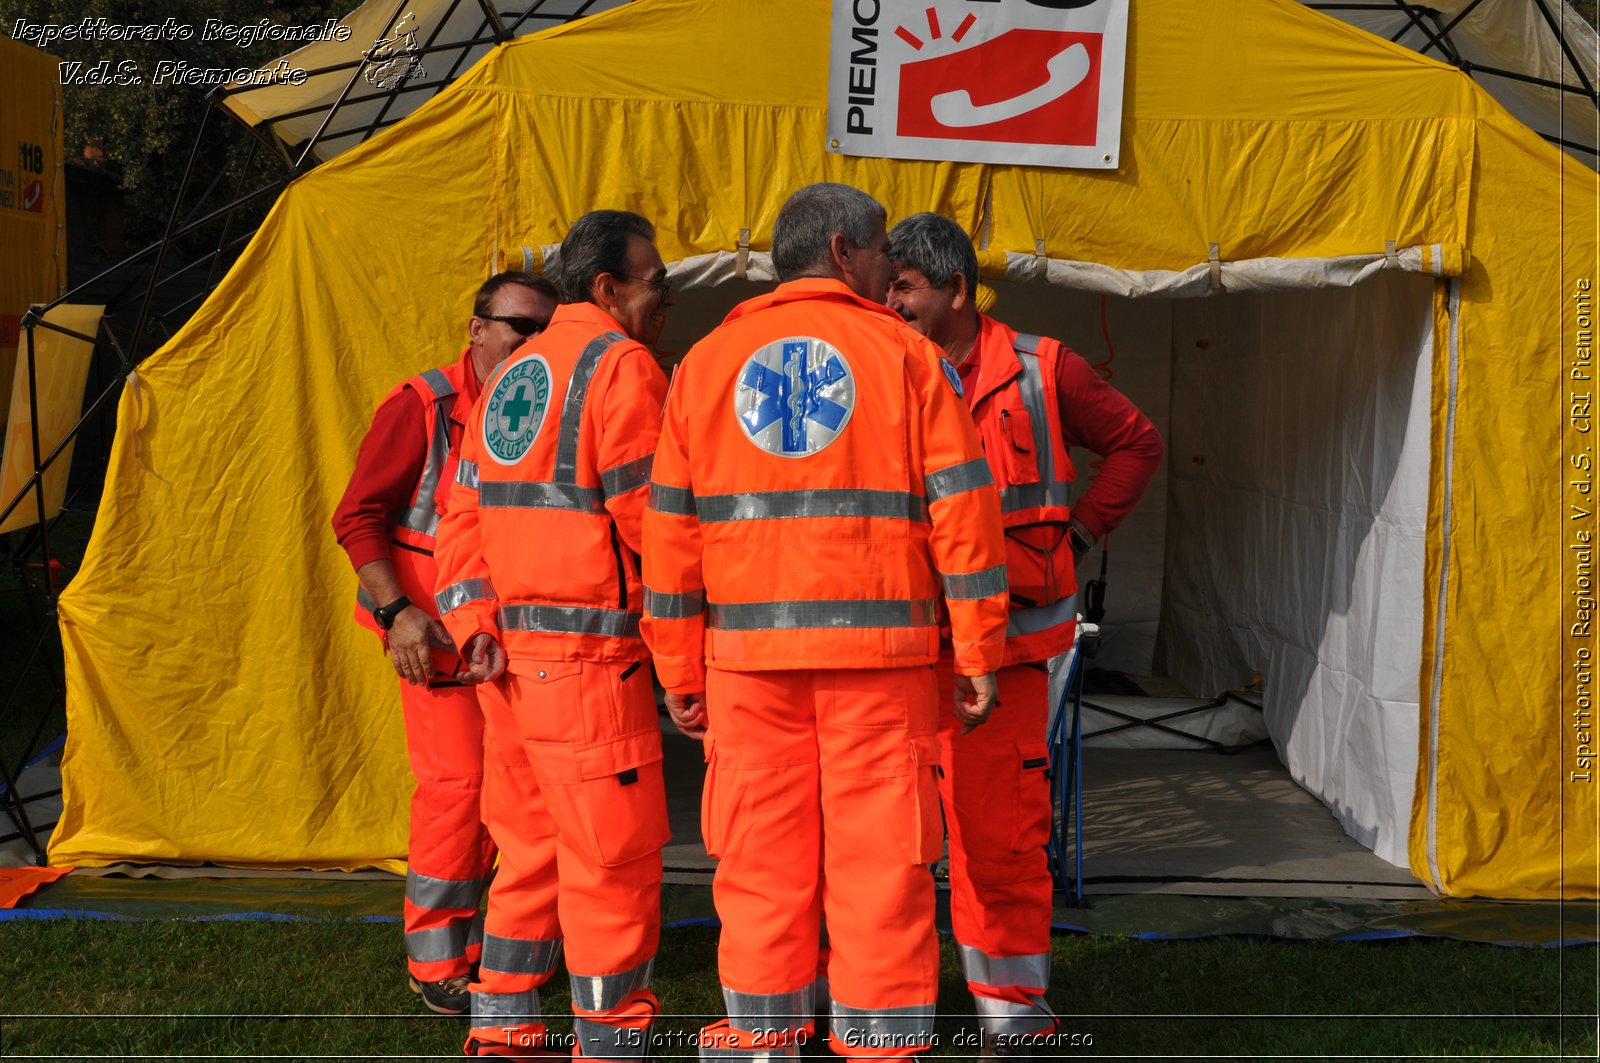 Torino - 15 ottobre 2010 - Fondazione CRT, Giornata del soccorso -  Croce Rossa Italiana - Ispettorato Regionale Volontari del Soccorso Piemonte